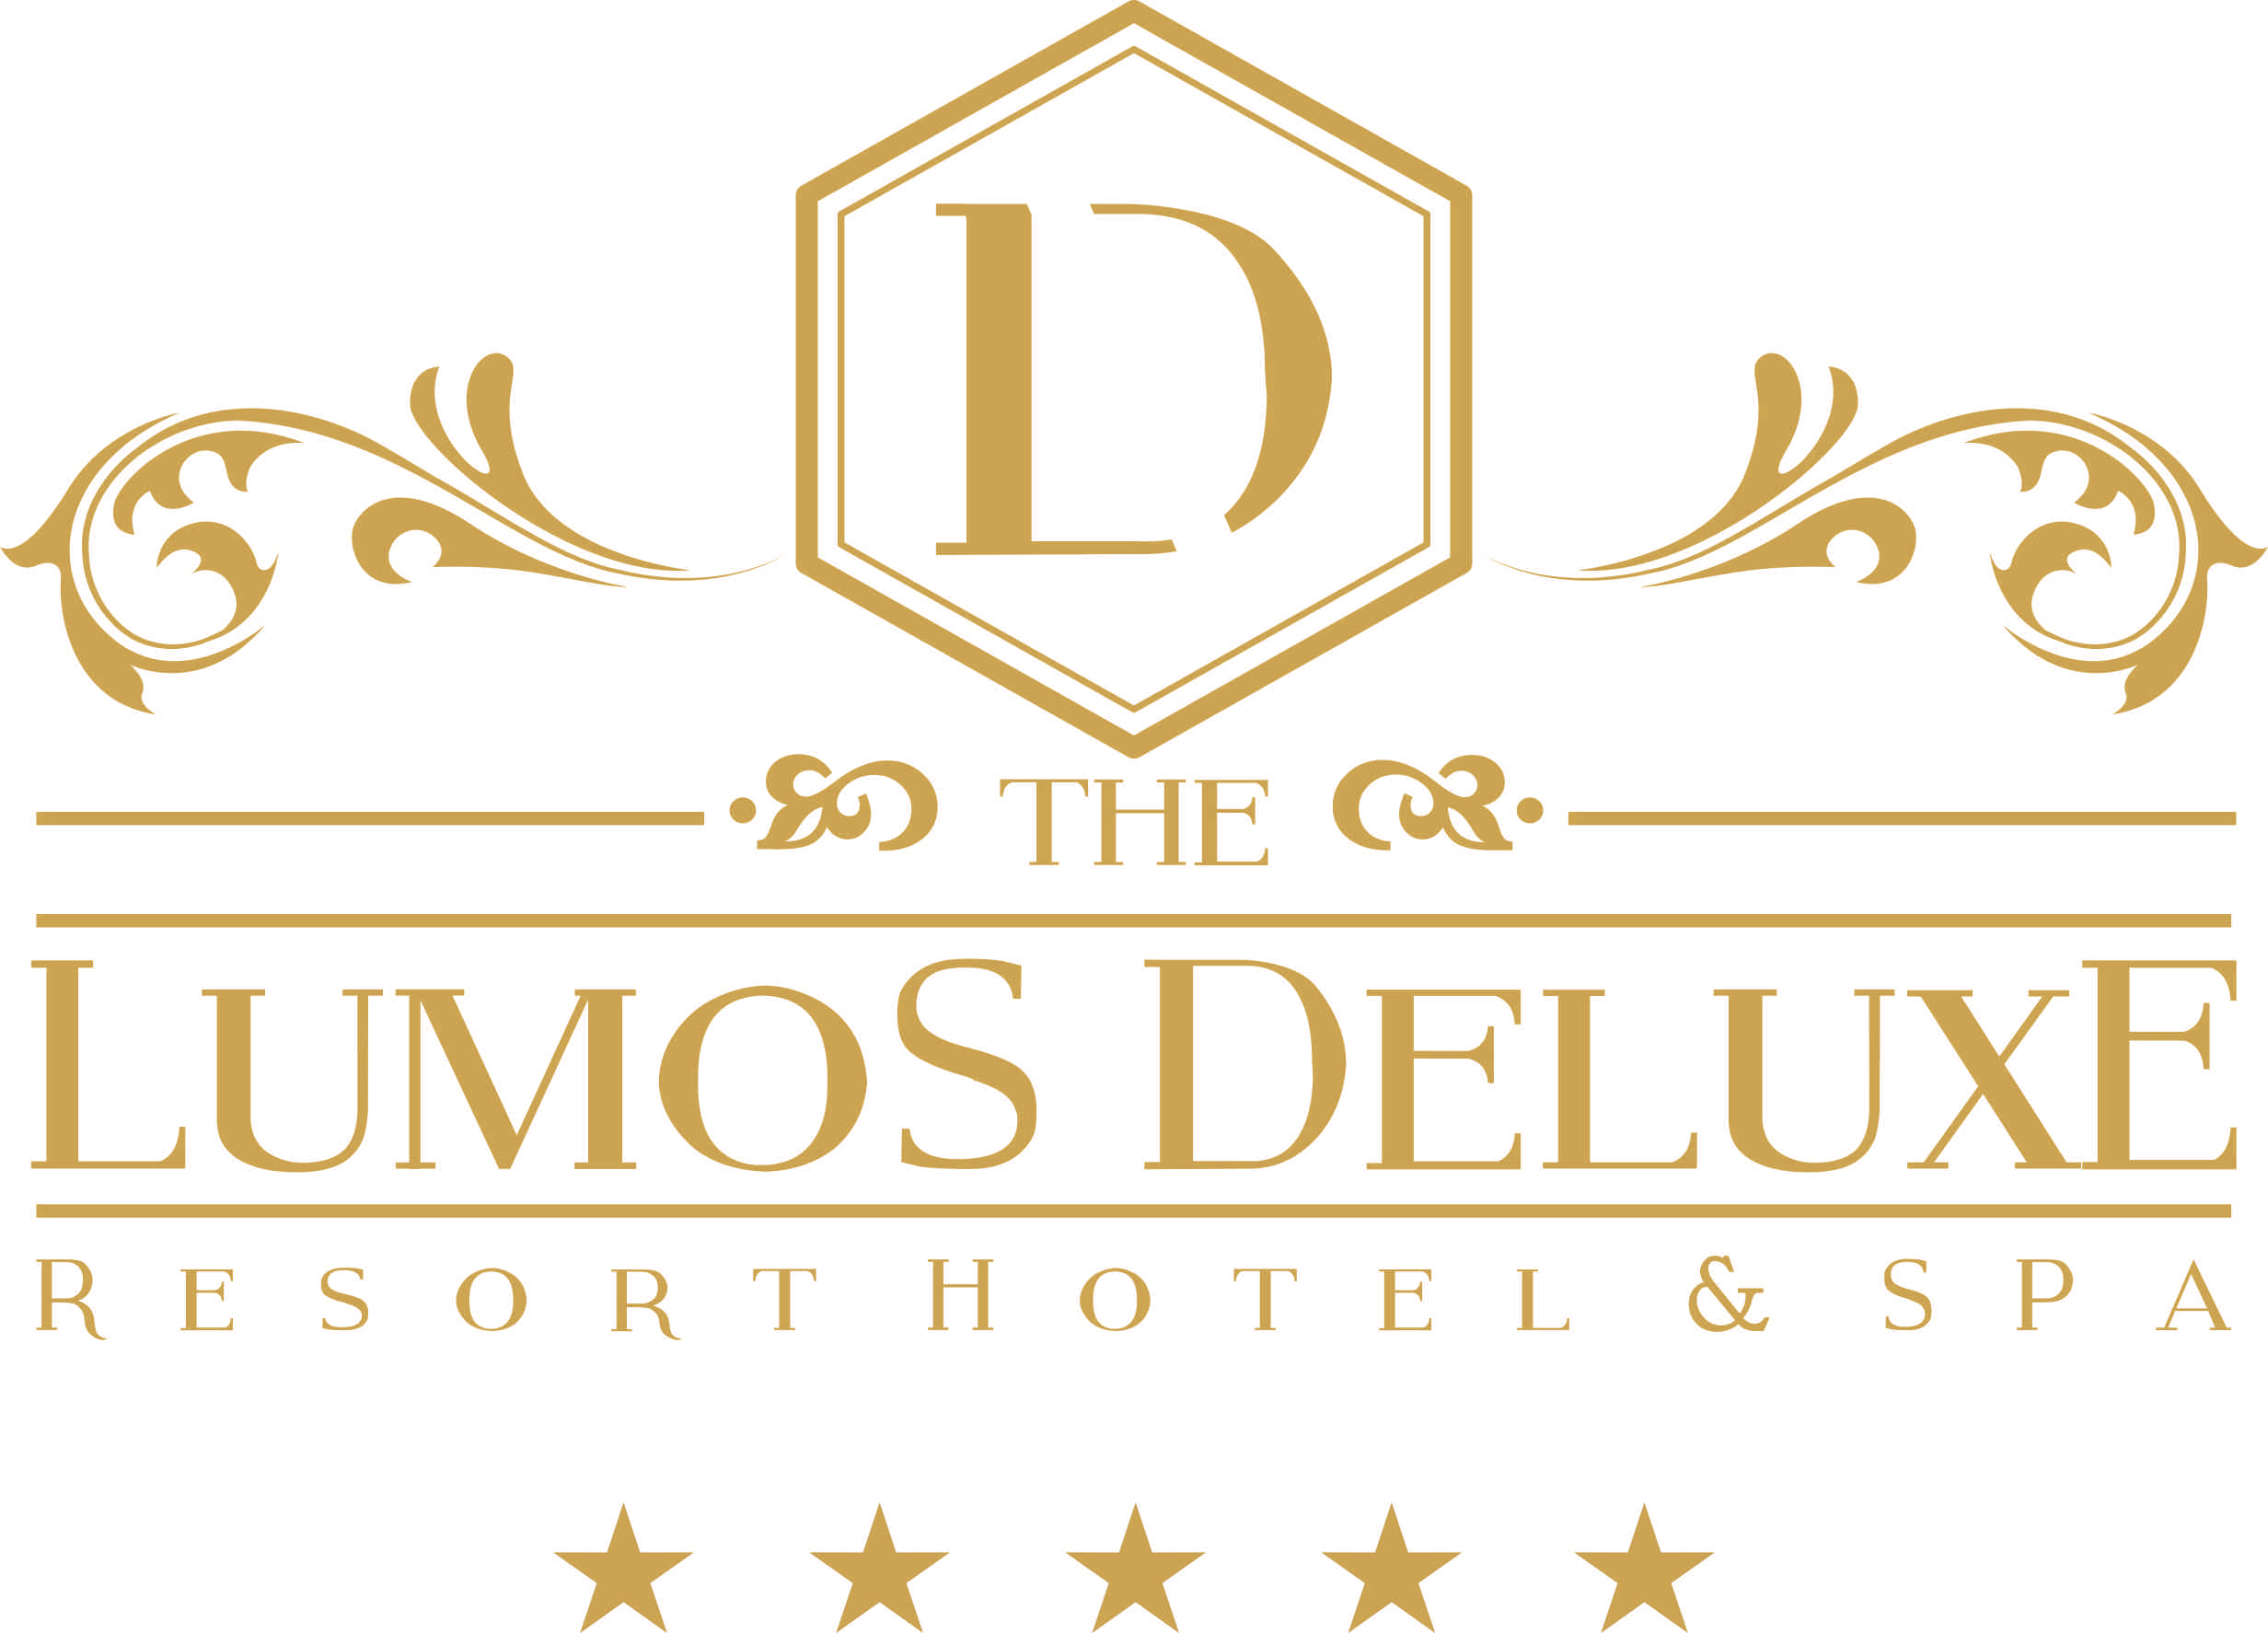 THE LUMOS DELUXE RESORT HOTEL